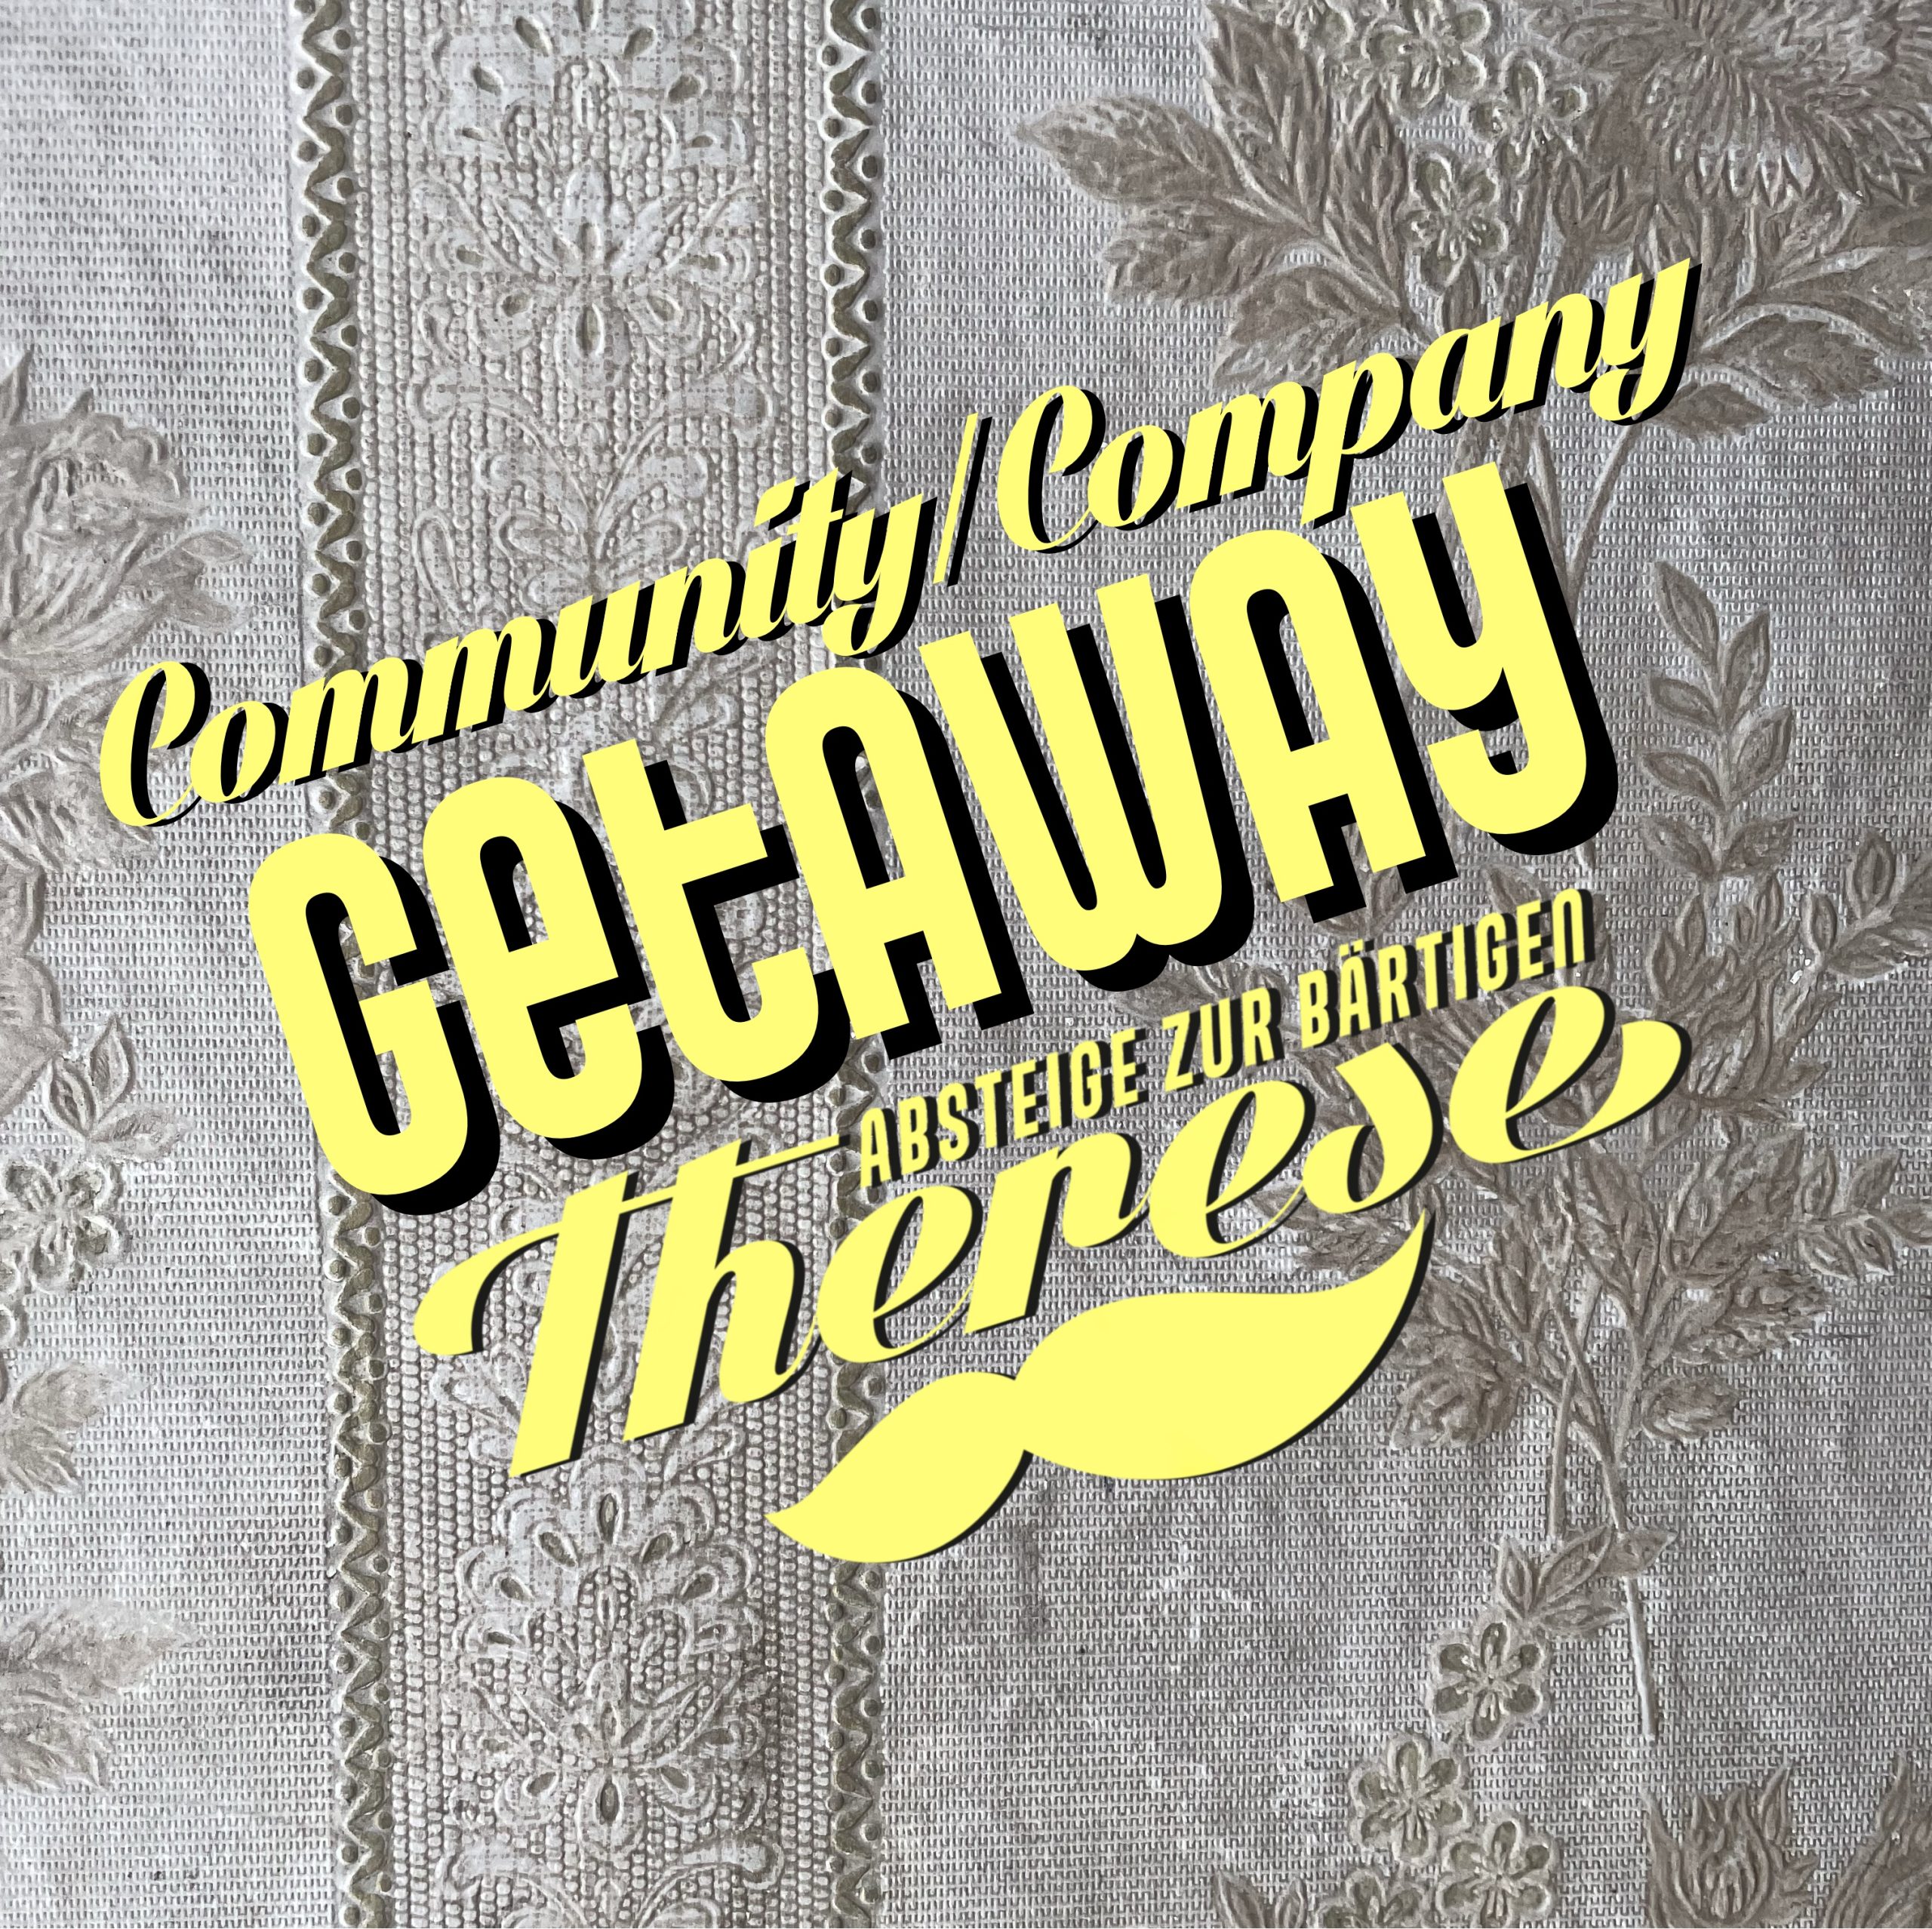 Community Getaway / Company Getaway III